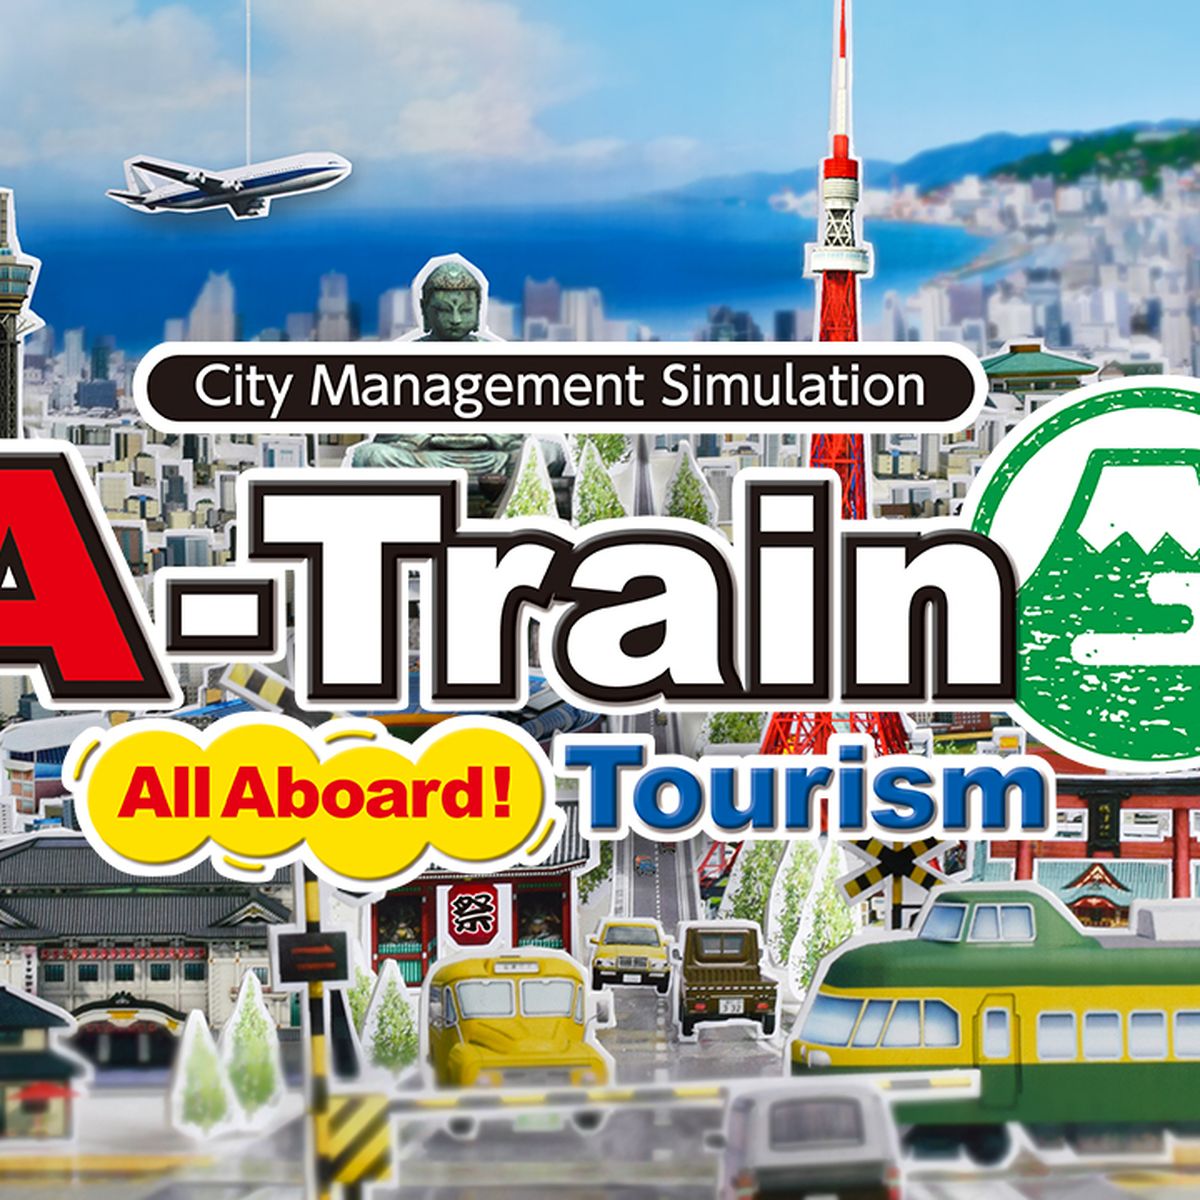 de ferroviaria, Tourism, gestión Switch de demo Consolas A-Train disponible juego Hobby Nintendo una recibe red | Aboard ya All